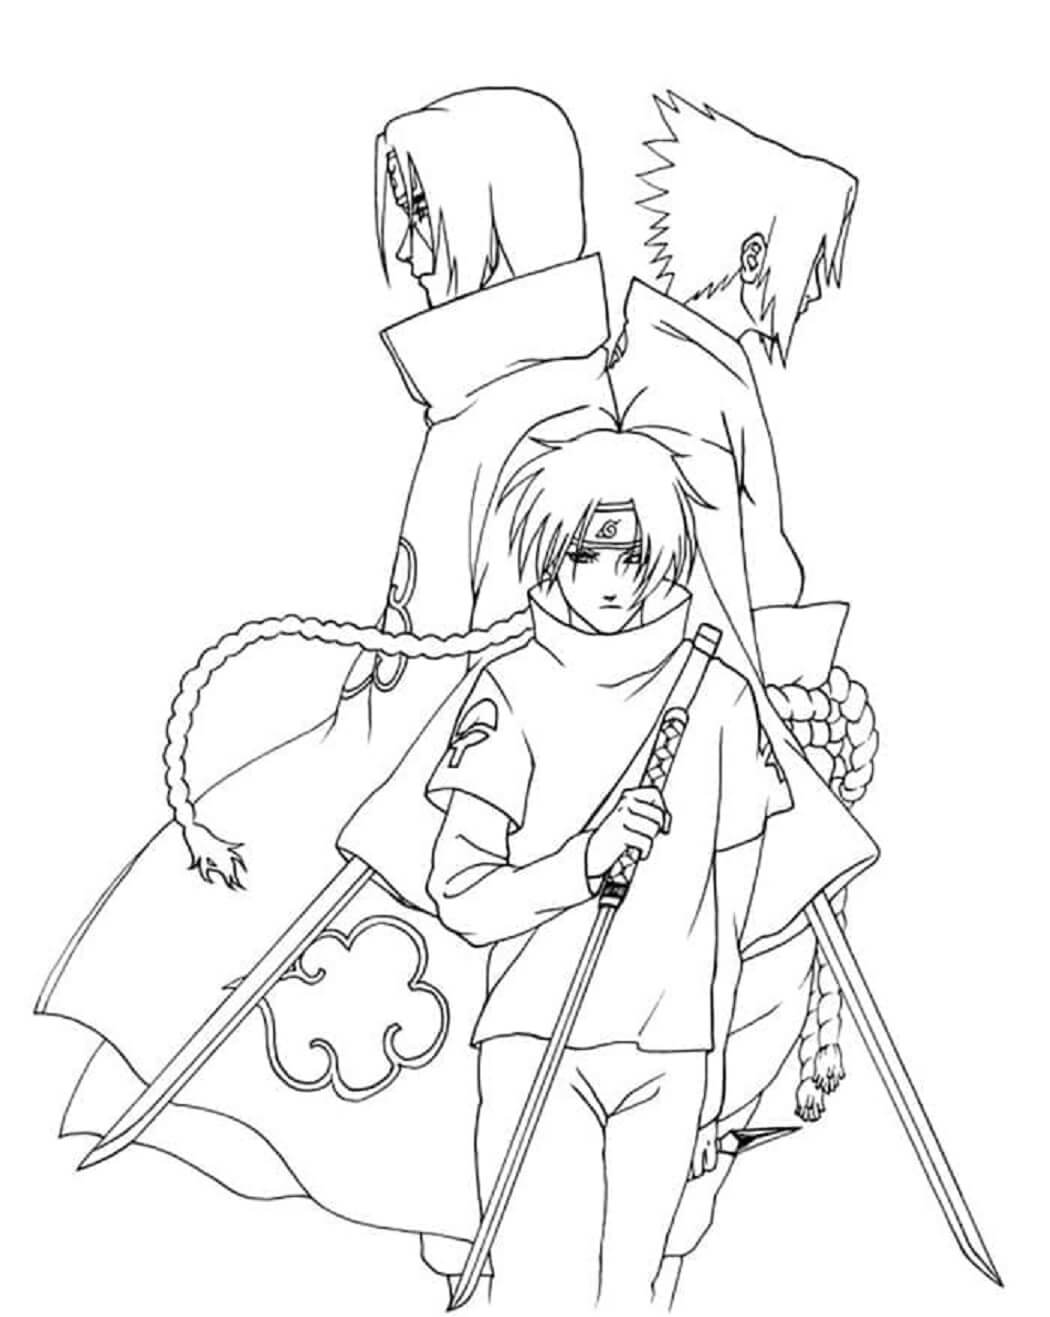 Uchiha Itachi and Uchiha Sasuke